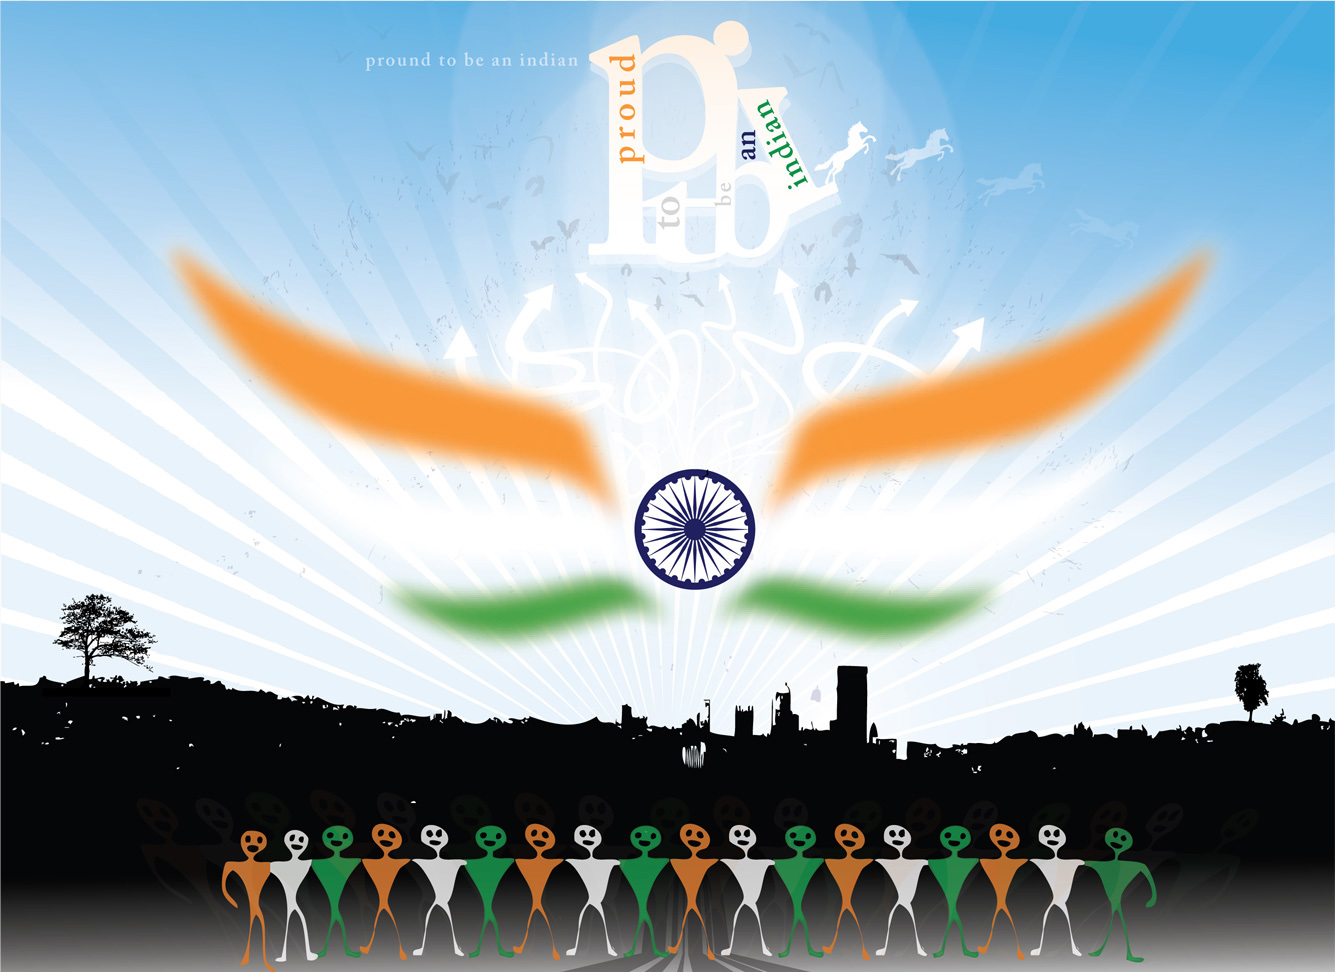 インドの旗の壁紙,チーム,バスケットボール,グラフィックデザイン,ゲーム